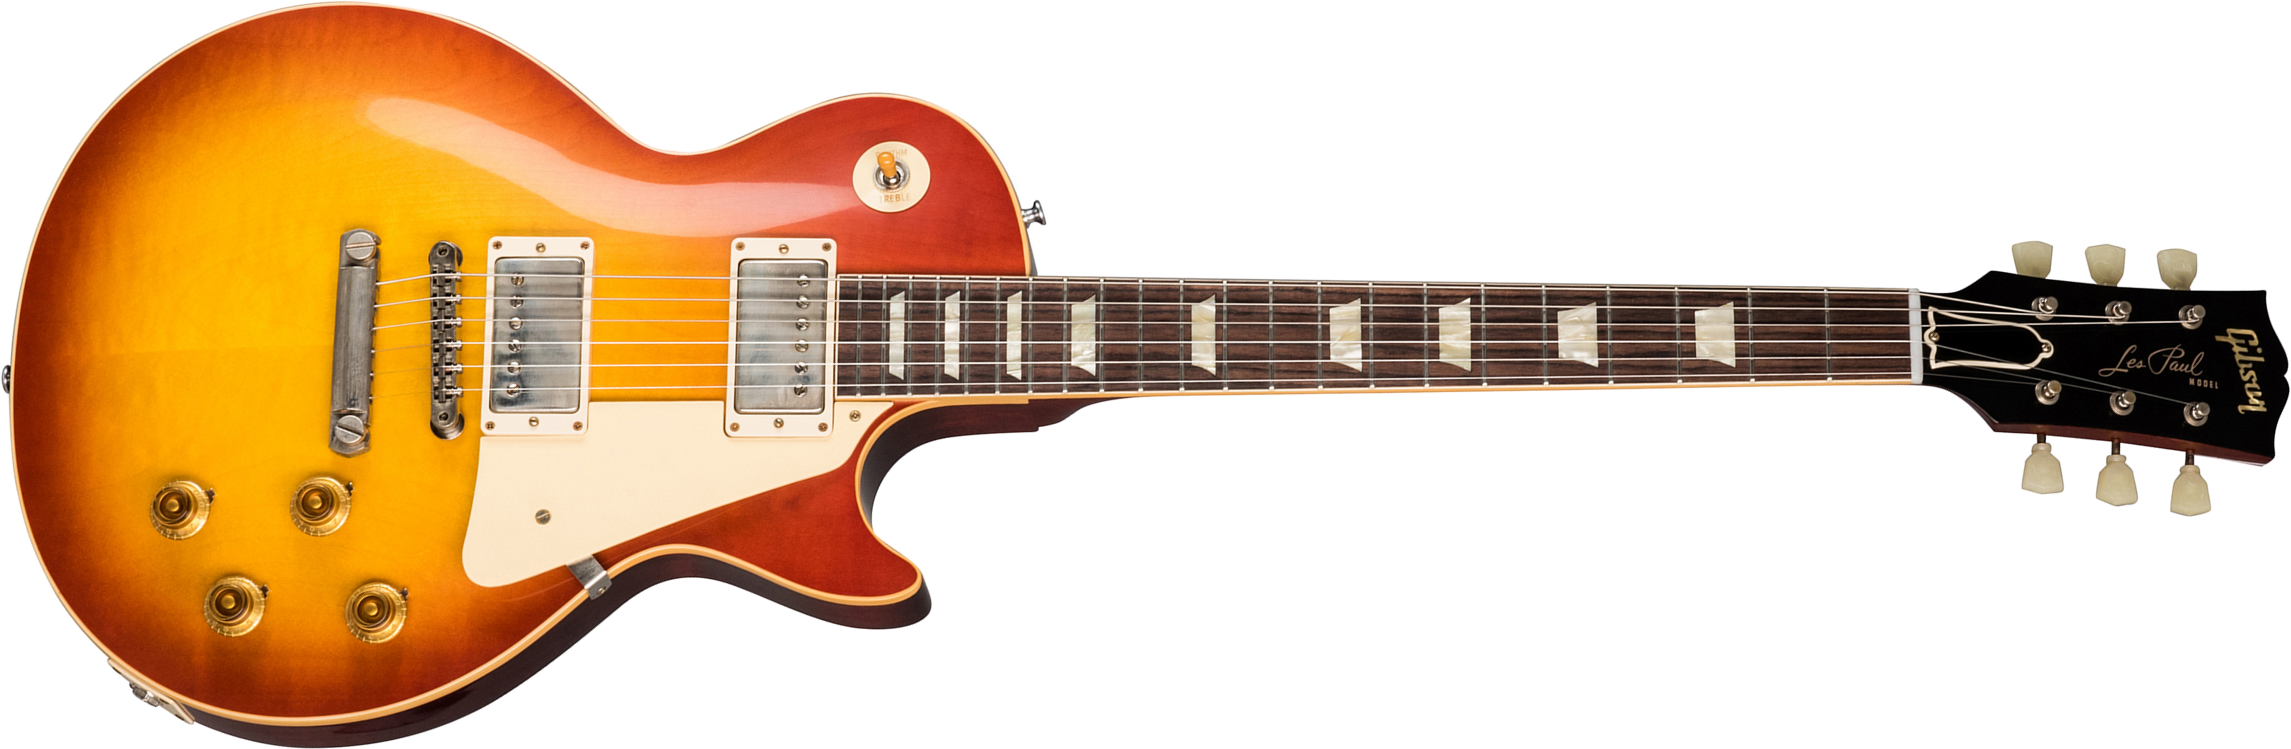 Gibson Custom Shop Les Paul Standard 1958 Reissue 2019 2h Ht Rw - Vos Washed Cherry Sunburst - Guitarra eléctrica de corte único. - Main picture